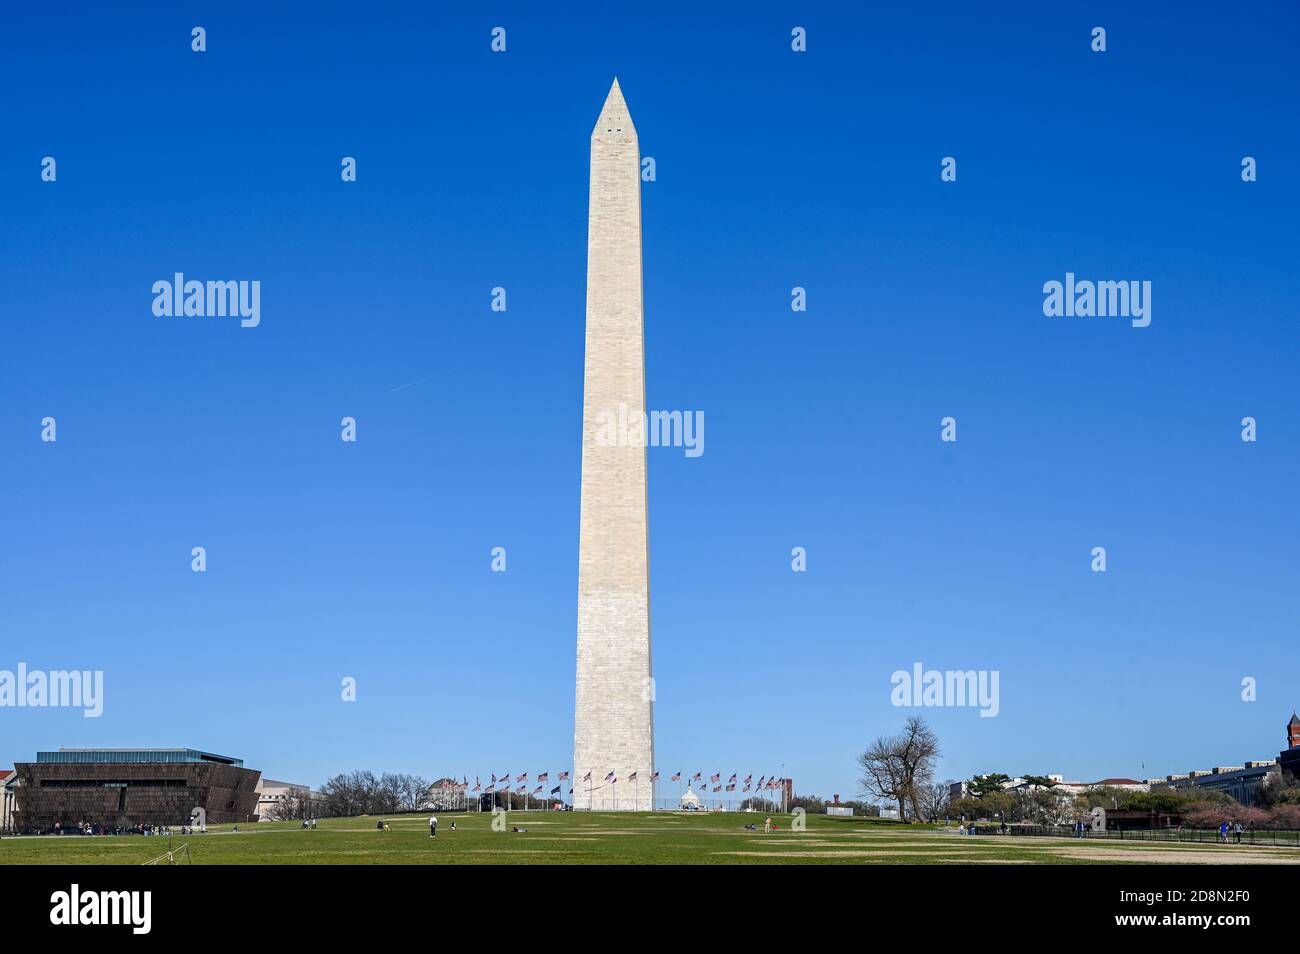 Monumento di Washington visto dal National Mall durante la primavera del 2019. A 169 metri era l'edificio più alto del mondo fino alla Torre Eiffel. Foto Stock